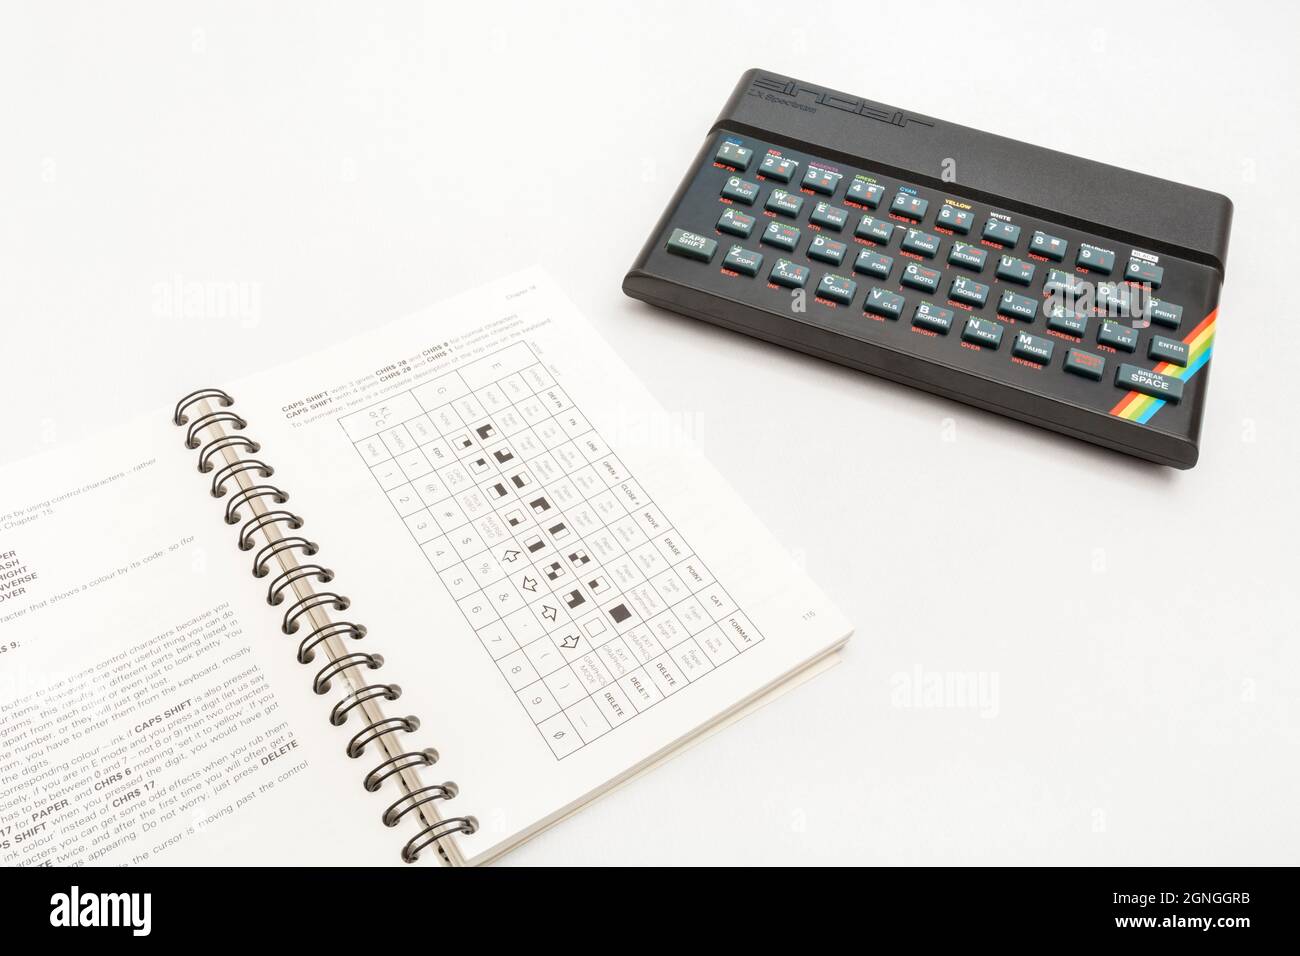 1982 Manuale di programmazione Sinclair ZX Spectrum & BASIC su sfondo bianco. Computer domestico a 8 bit antico/vintage. Ha ispirato una generazione. Note viste. Foto Stock